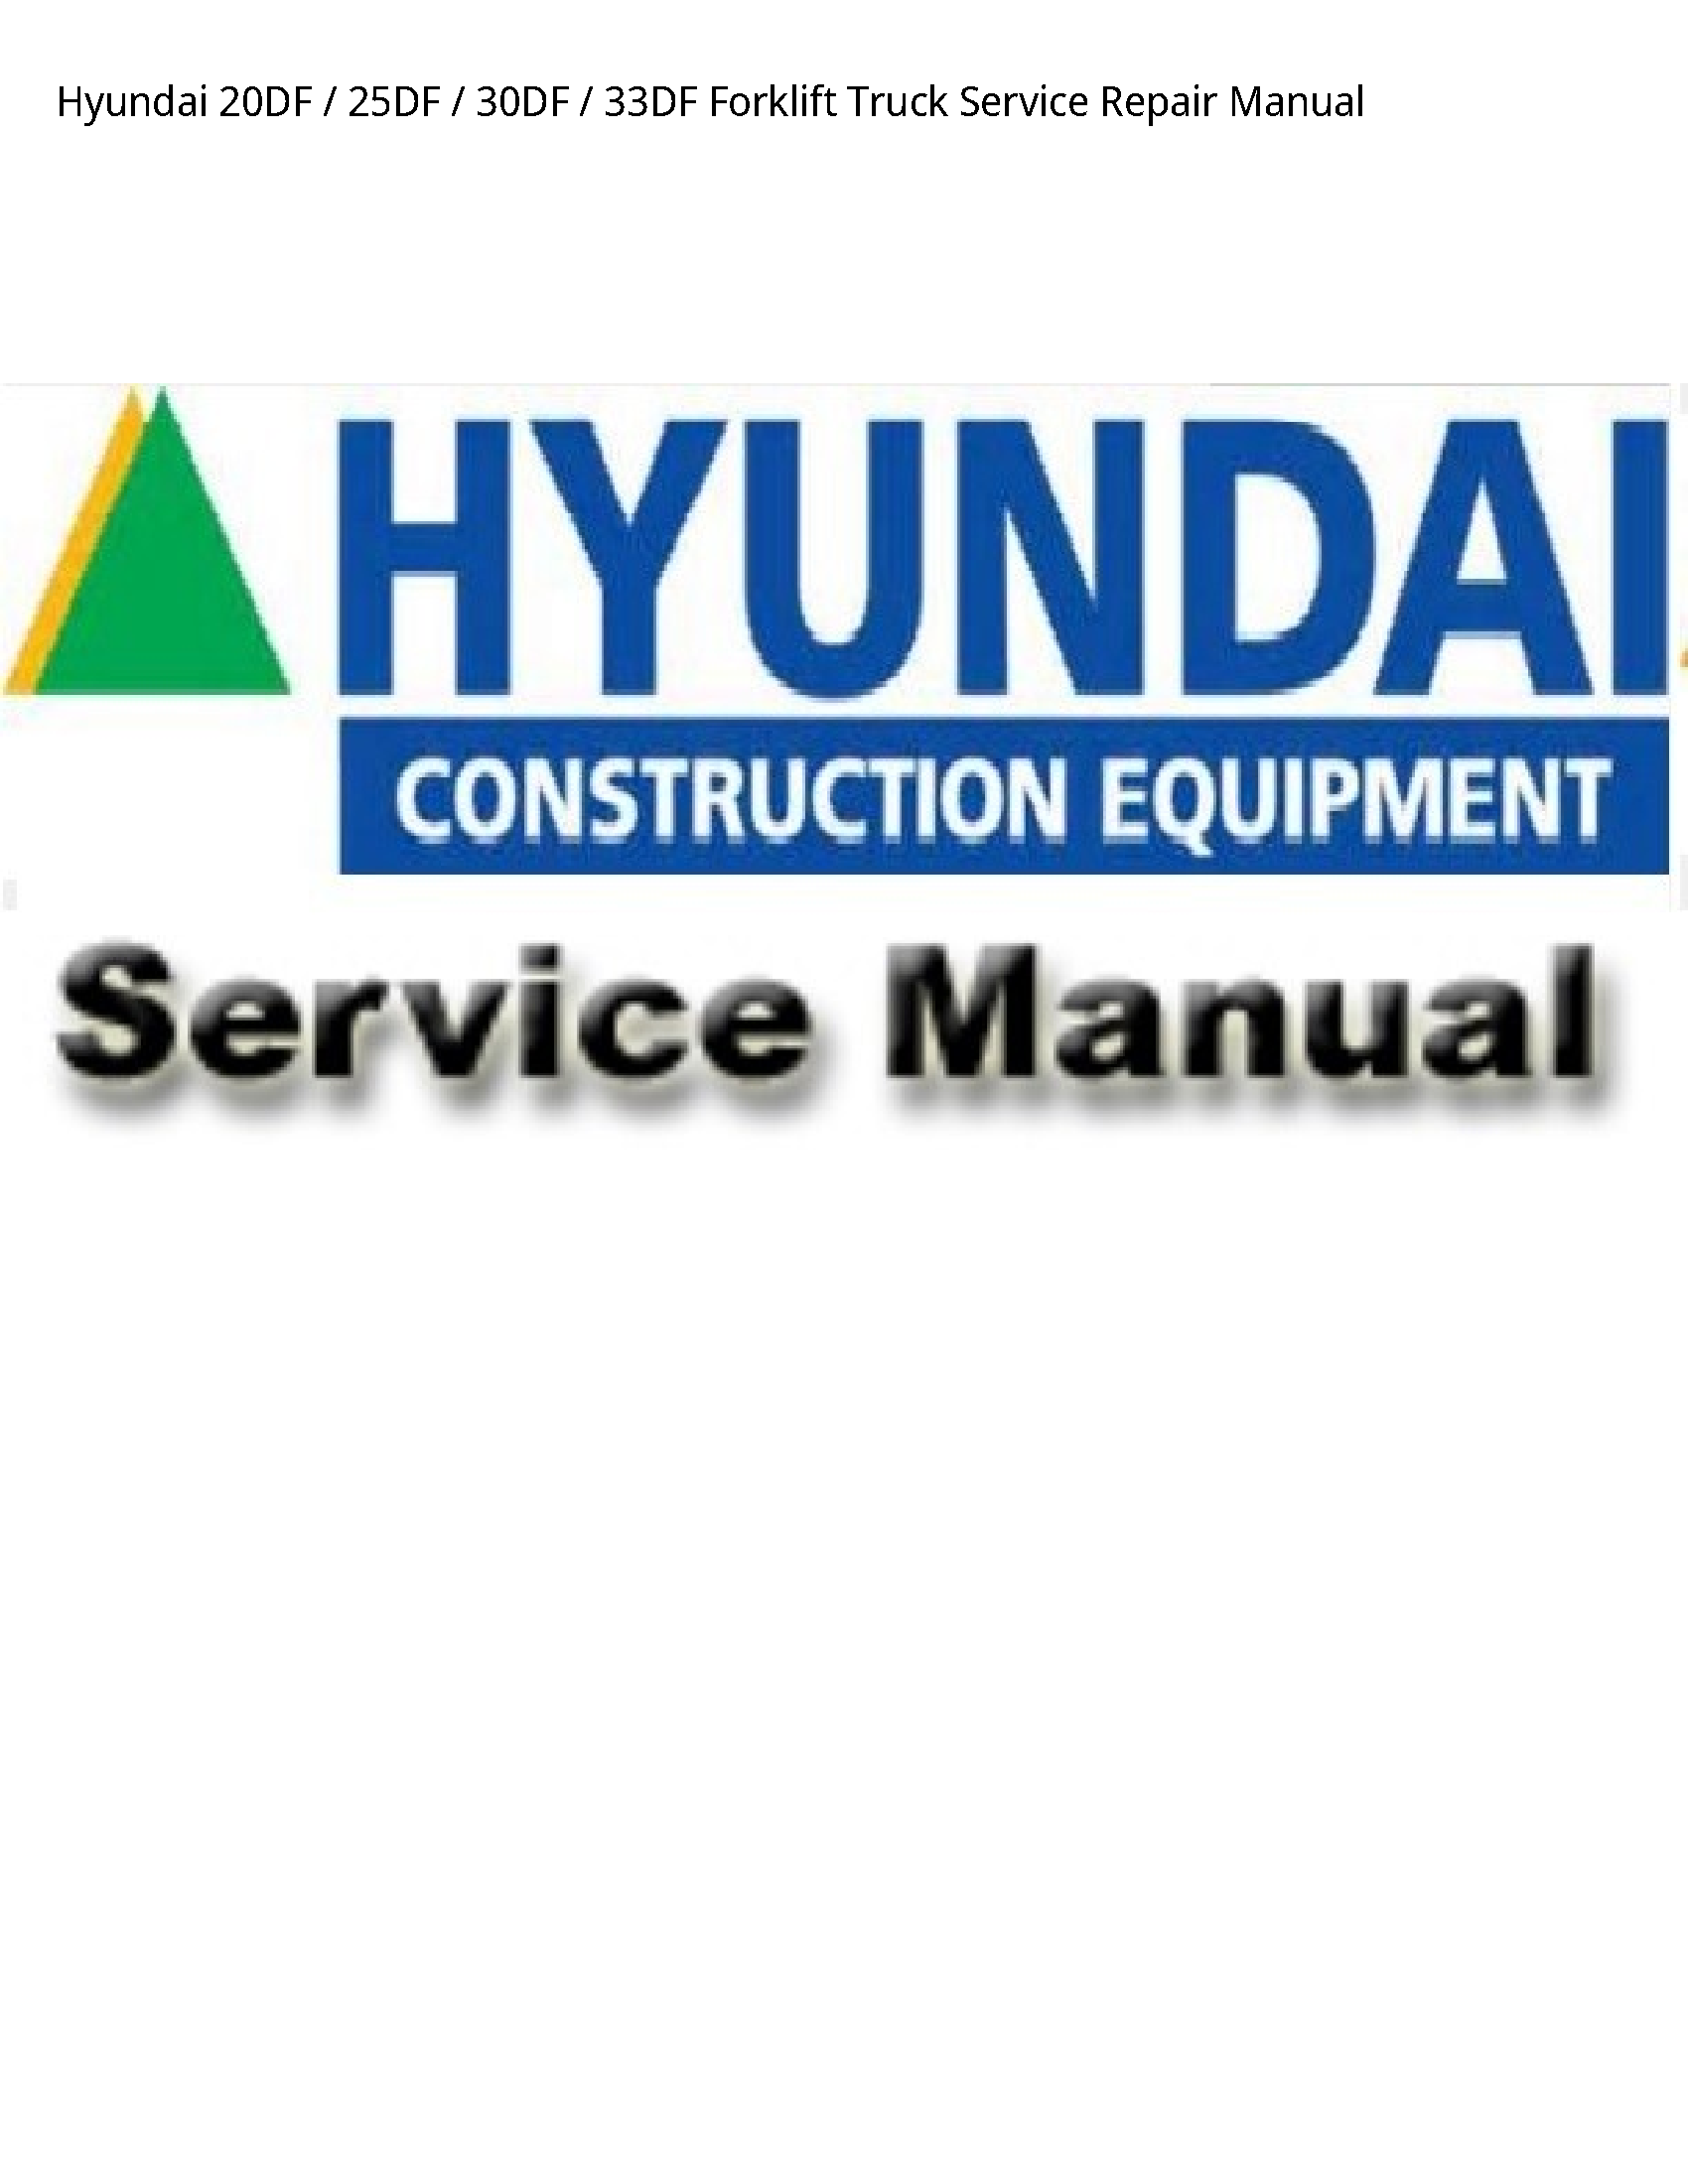 Hyundai 20DF Forklift Truck manual